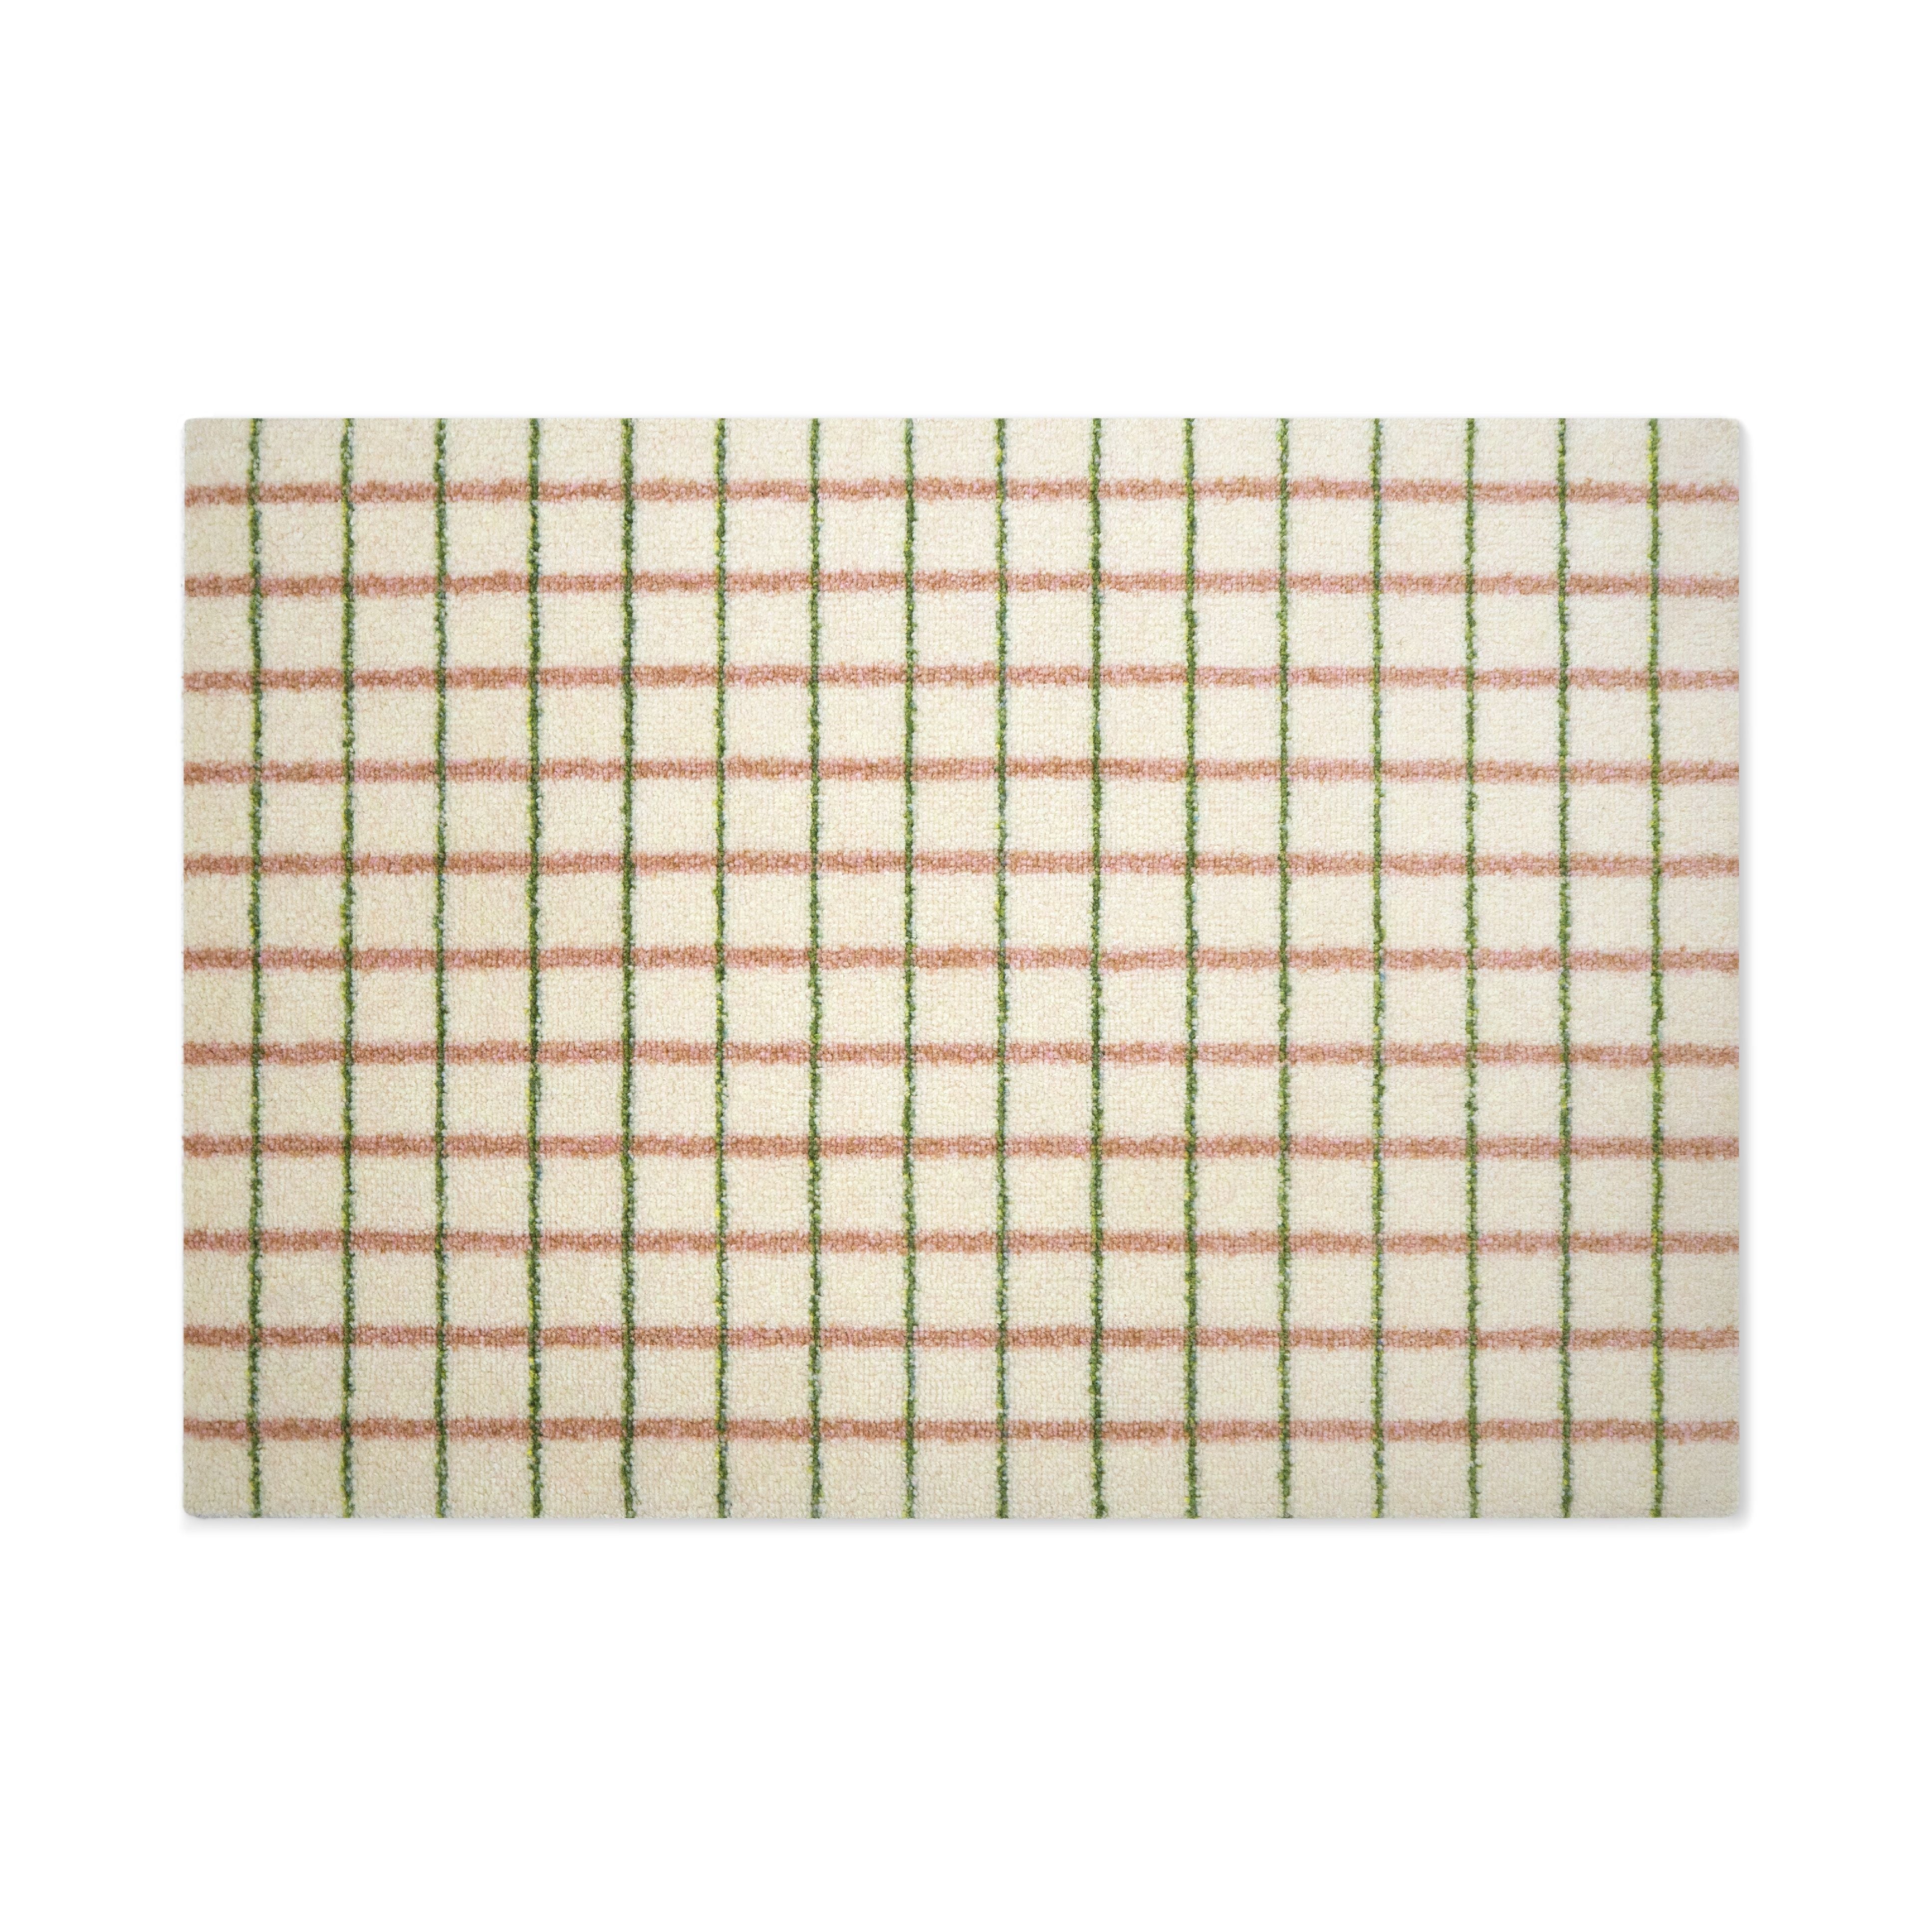 HEMAT Grid Doormat Lime Candycane, 60x85 cm